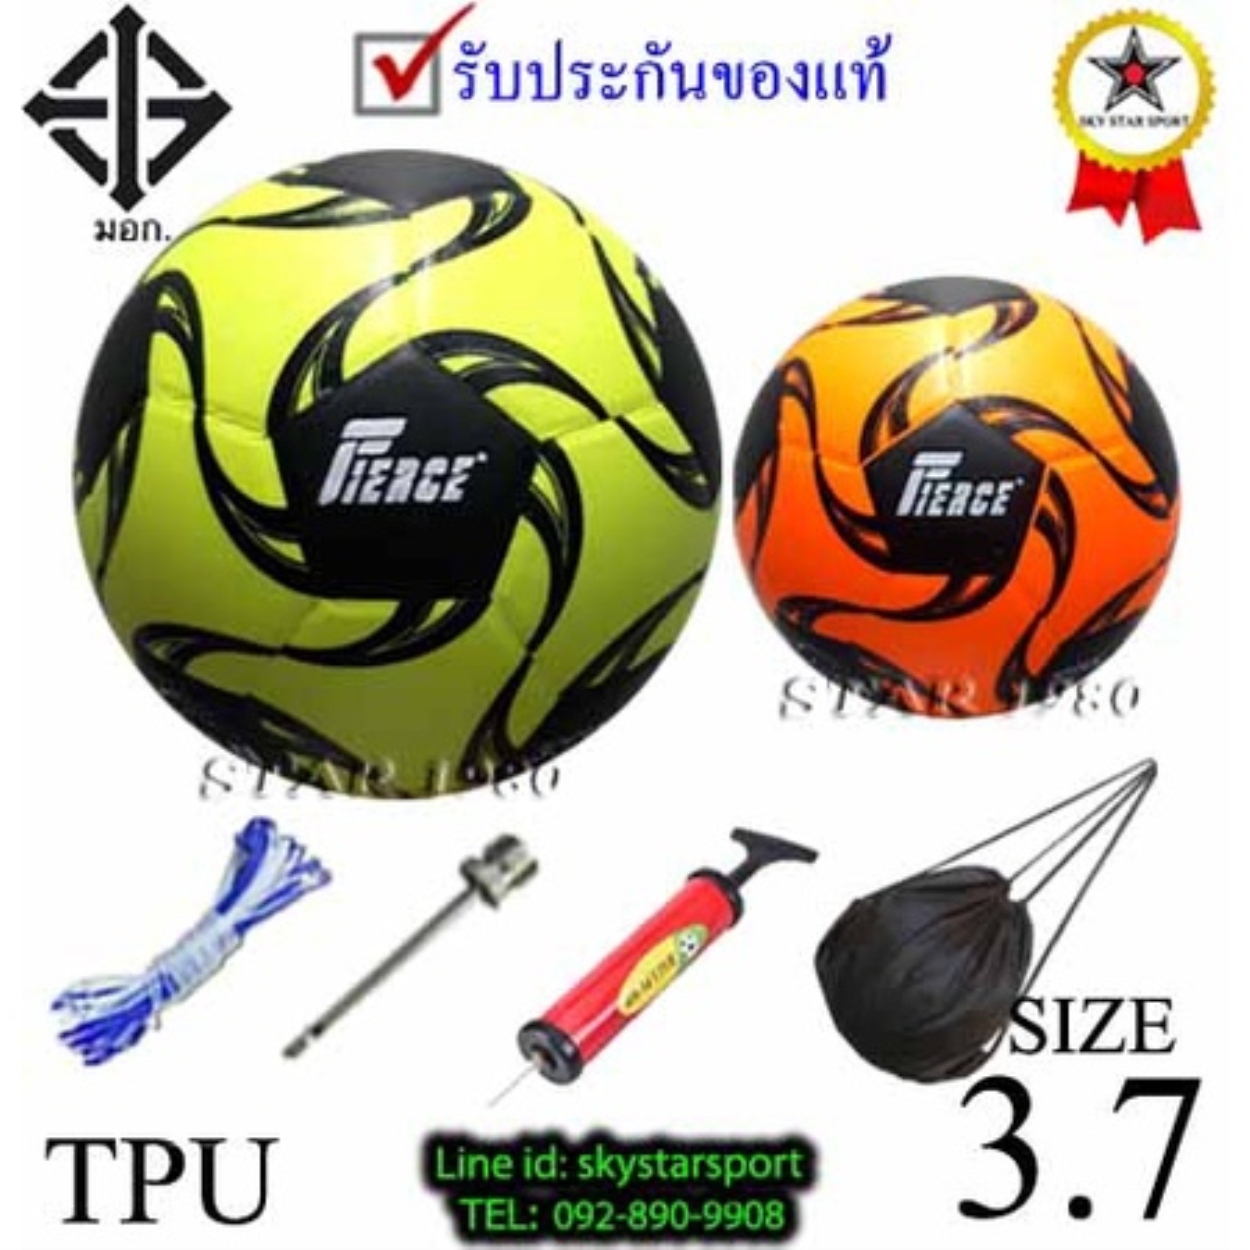 ลูกฟุตซอล เฟียส futsalball fierce รุ่น 001 (y o) เบอร์ 3.7 หนังอัด pvc k-n ex